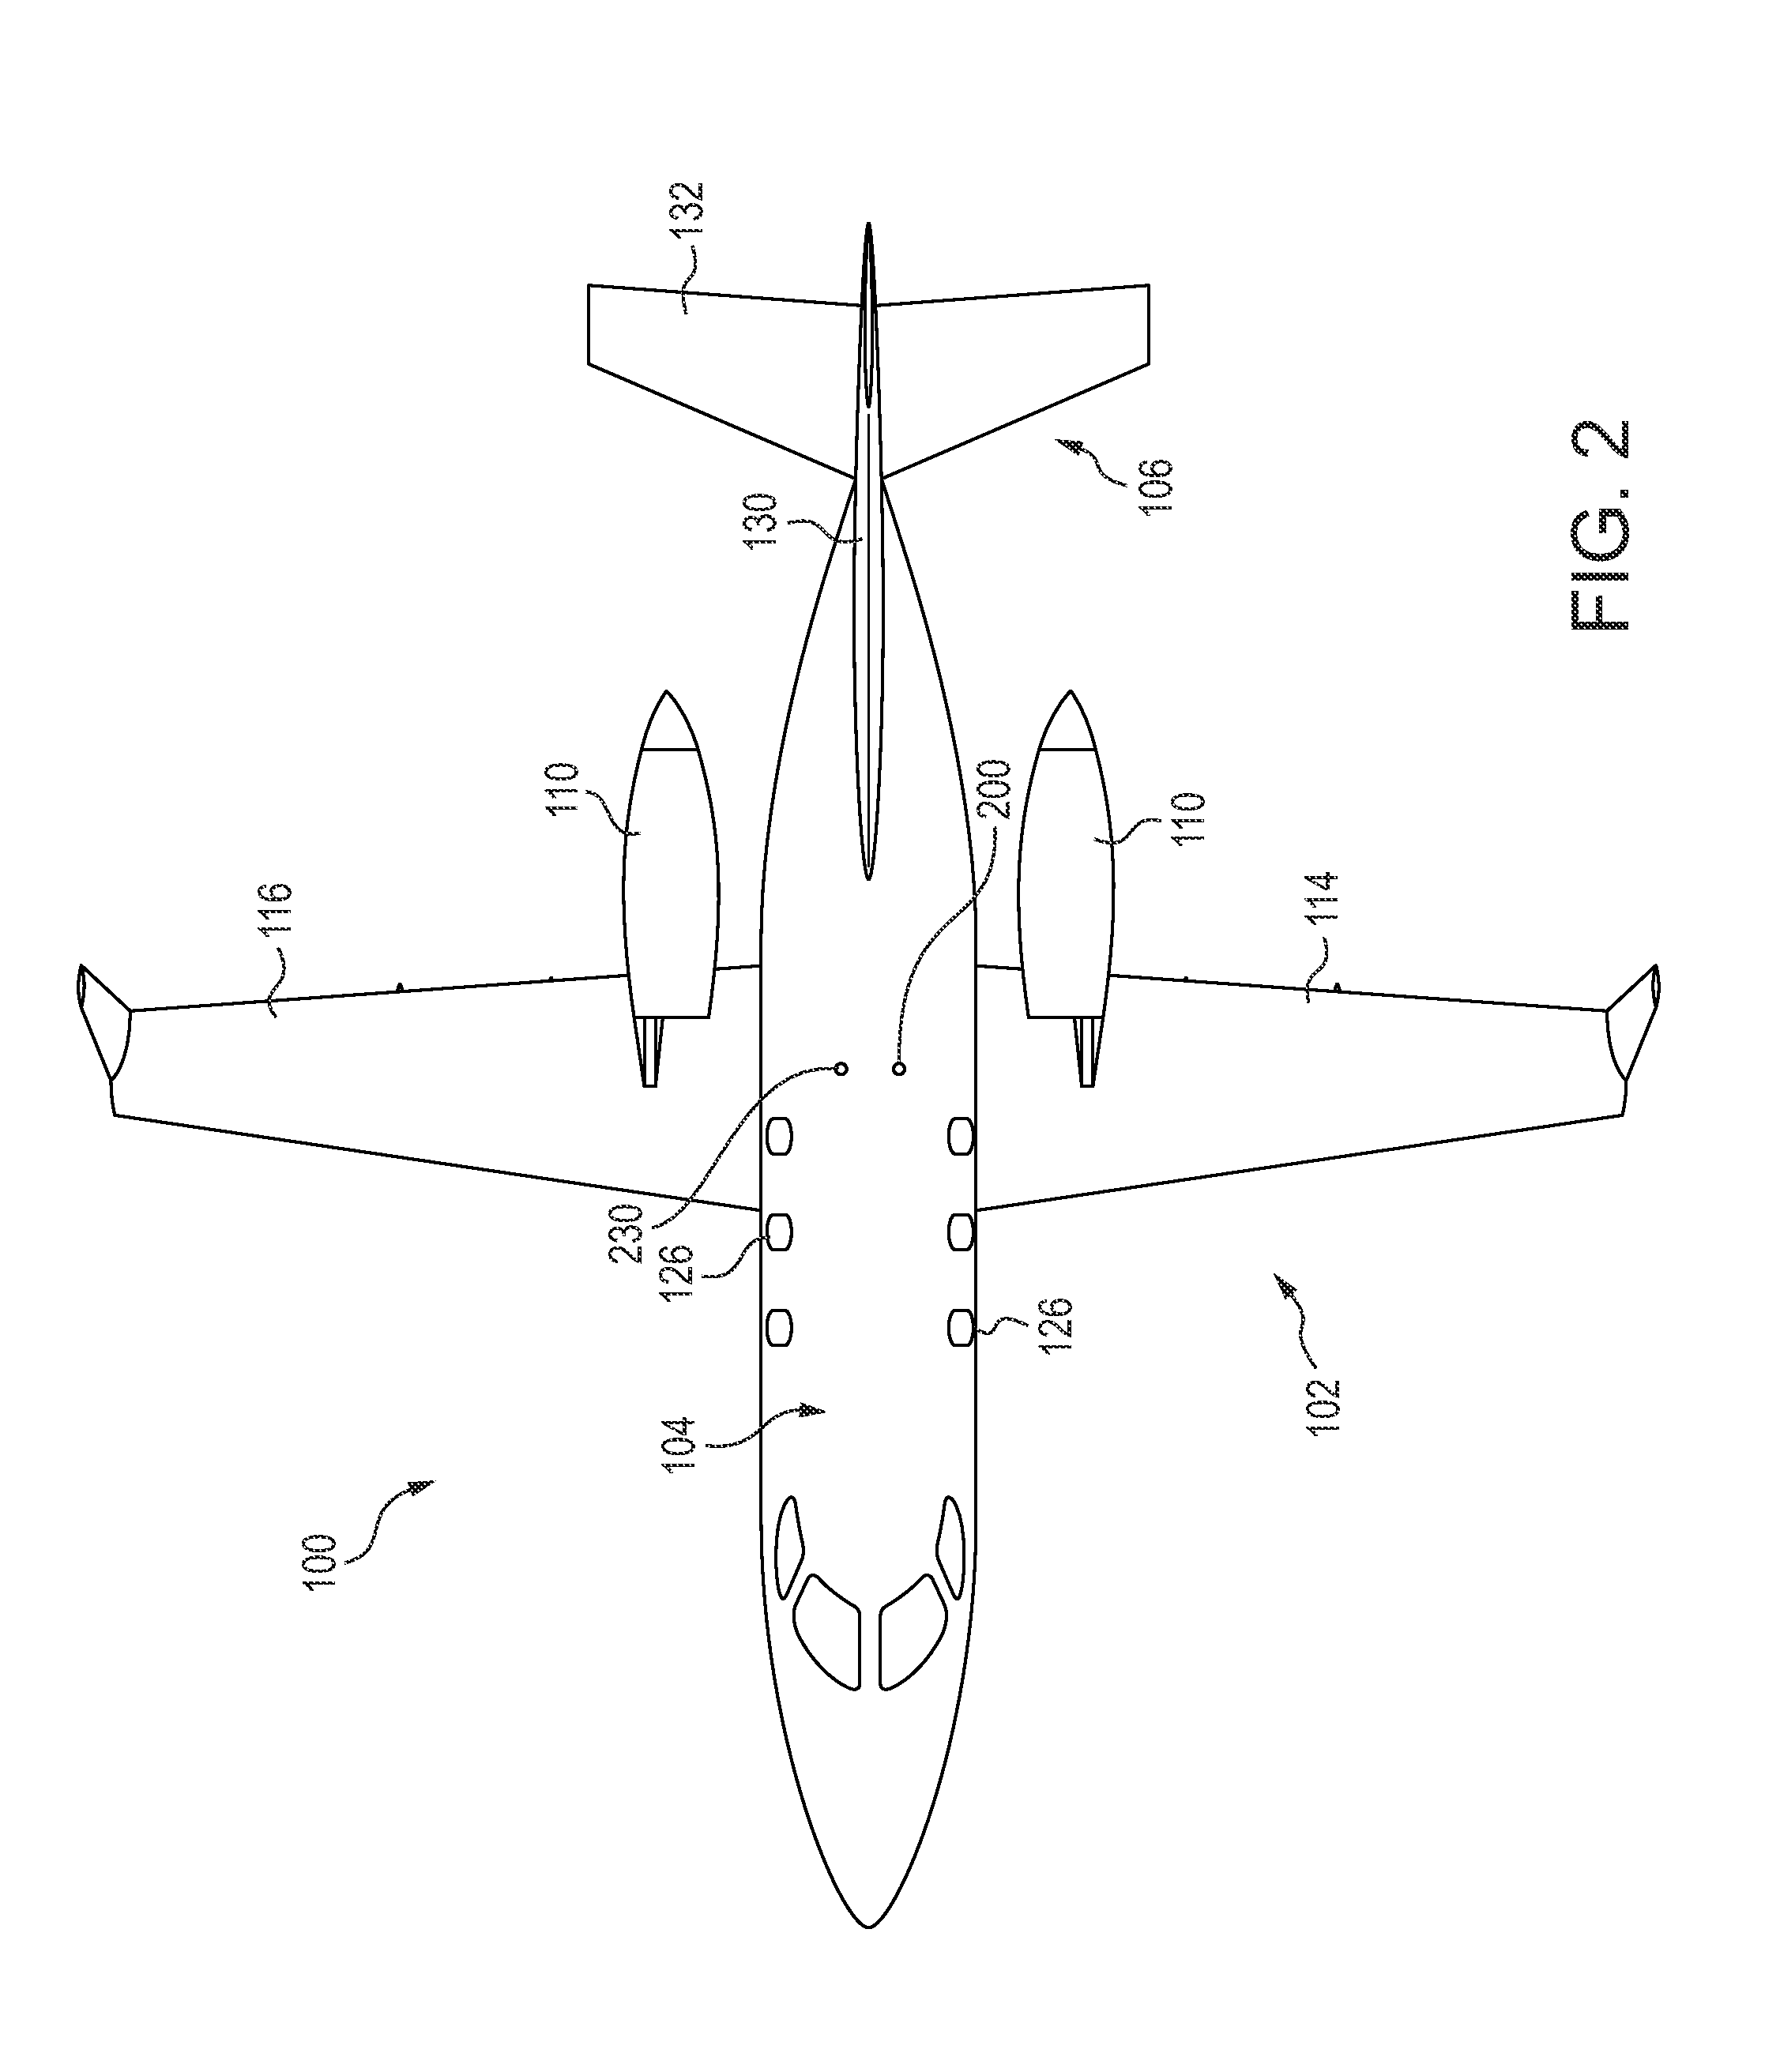 Window of an aircraft